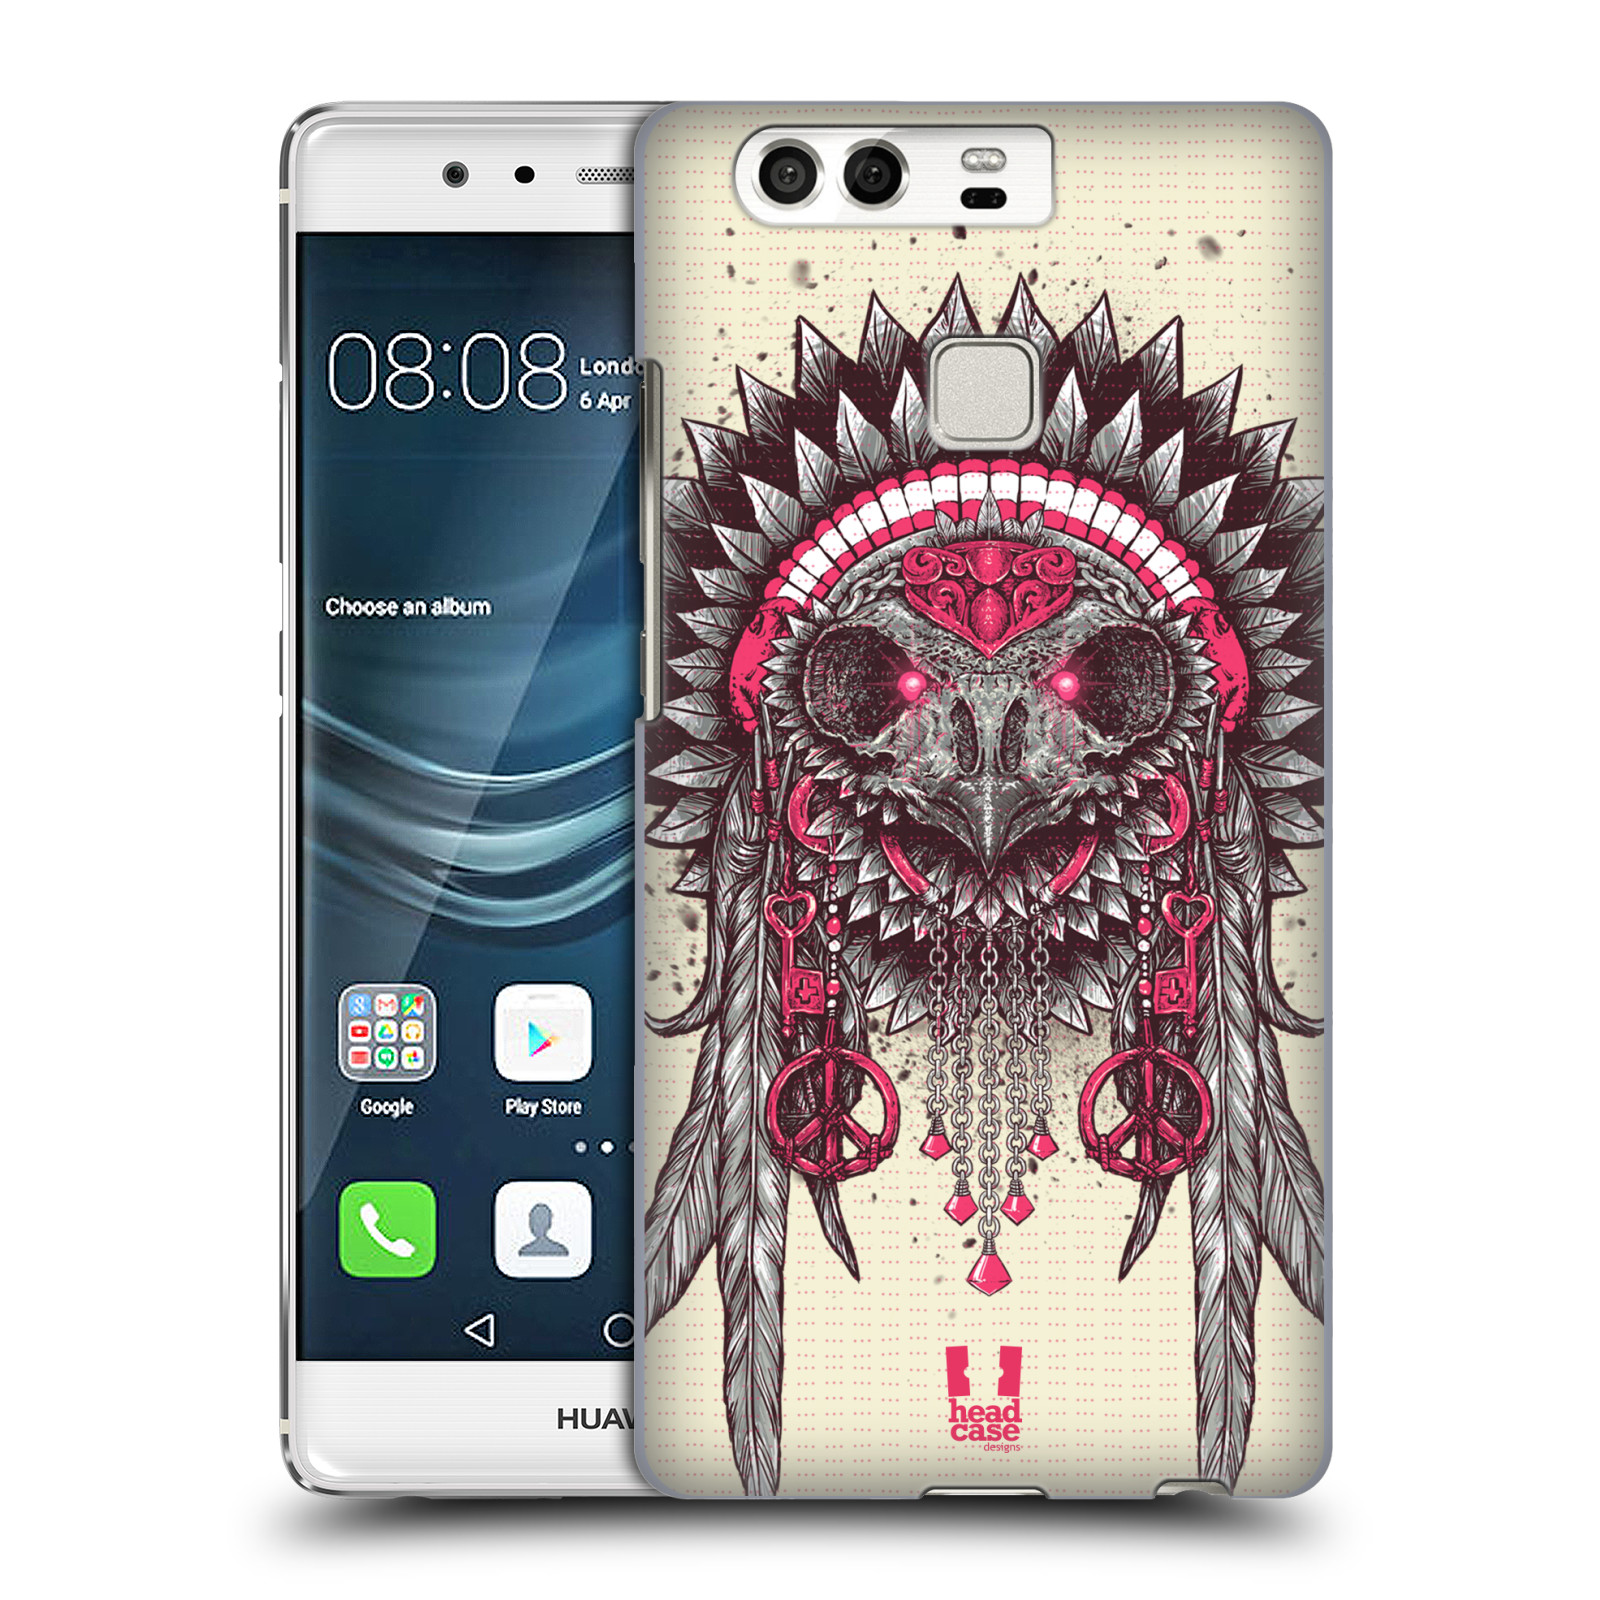 HEAD CASE plastový obal na mobil Huawei P9 / P9 DUAL SIM vzor Etnické sovy růžová a šedá